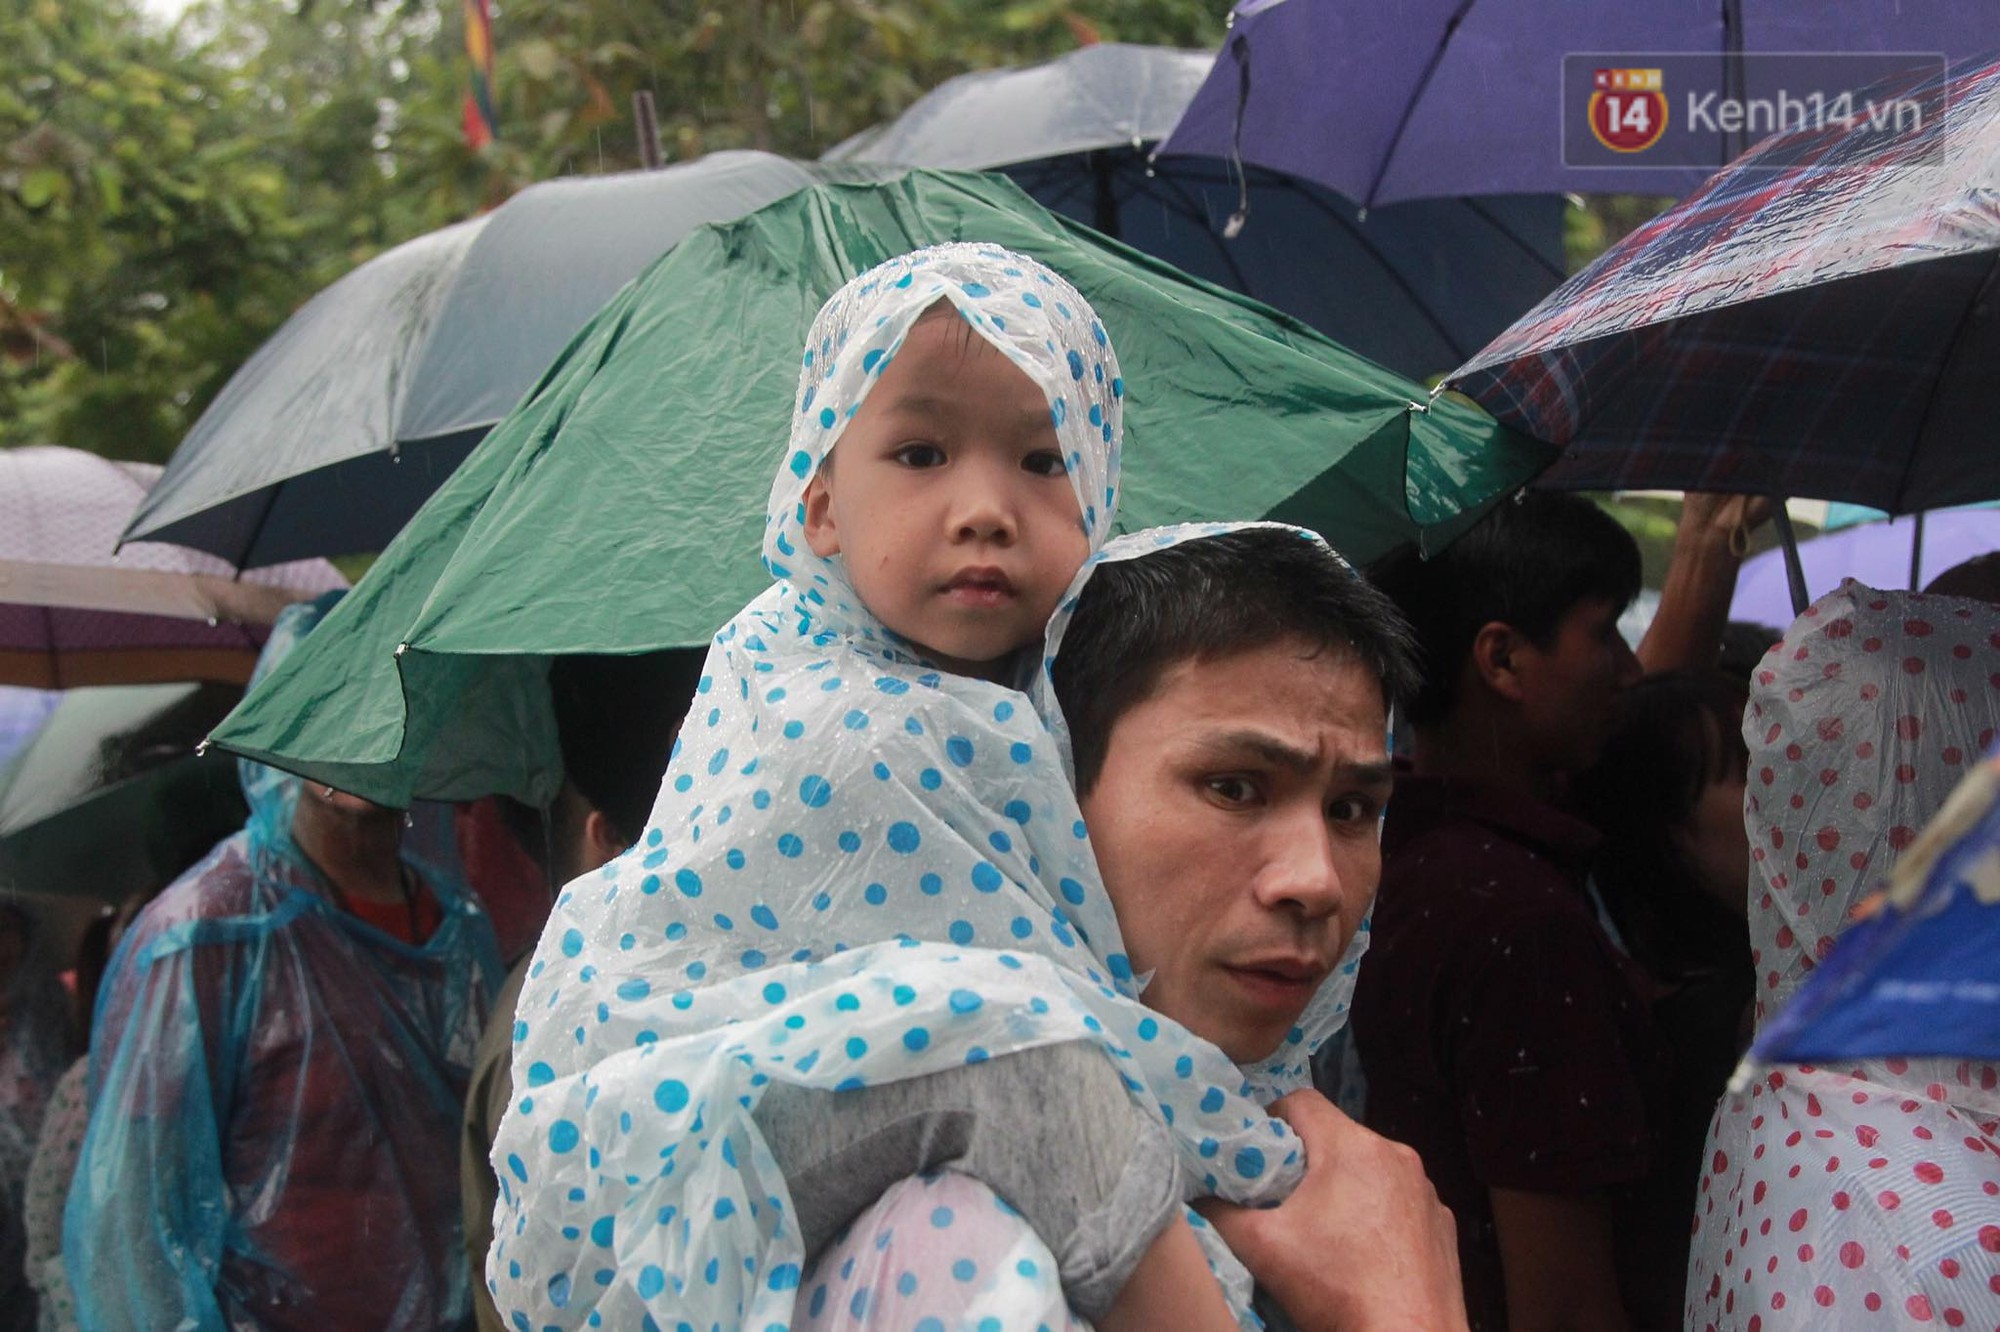 Hàng vạn người dân che ô đi khai hội Đền Hùng, hàng rào sống đứng dưới mưa đảm bảo trật tự cho lễ hội - Ảnh 14.